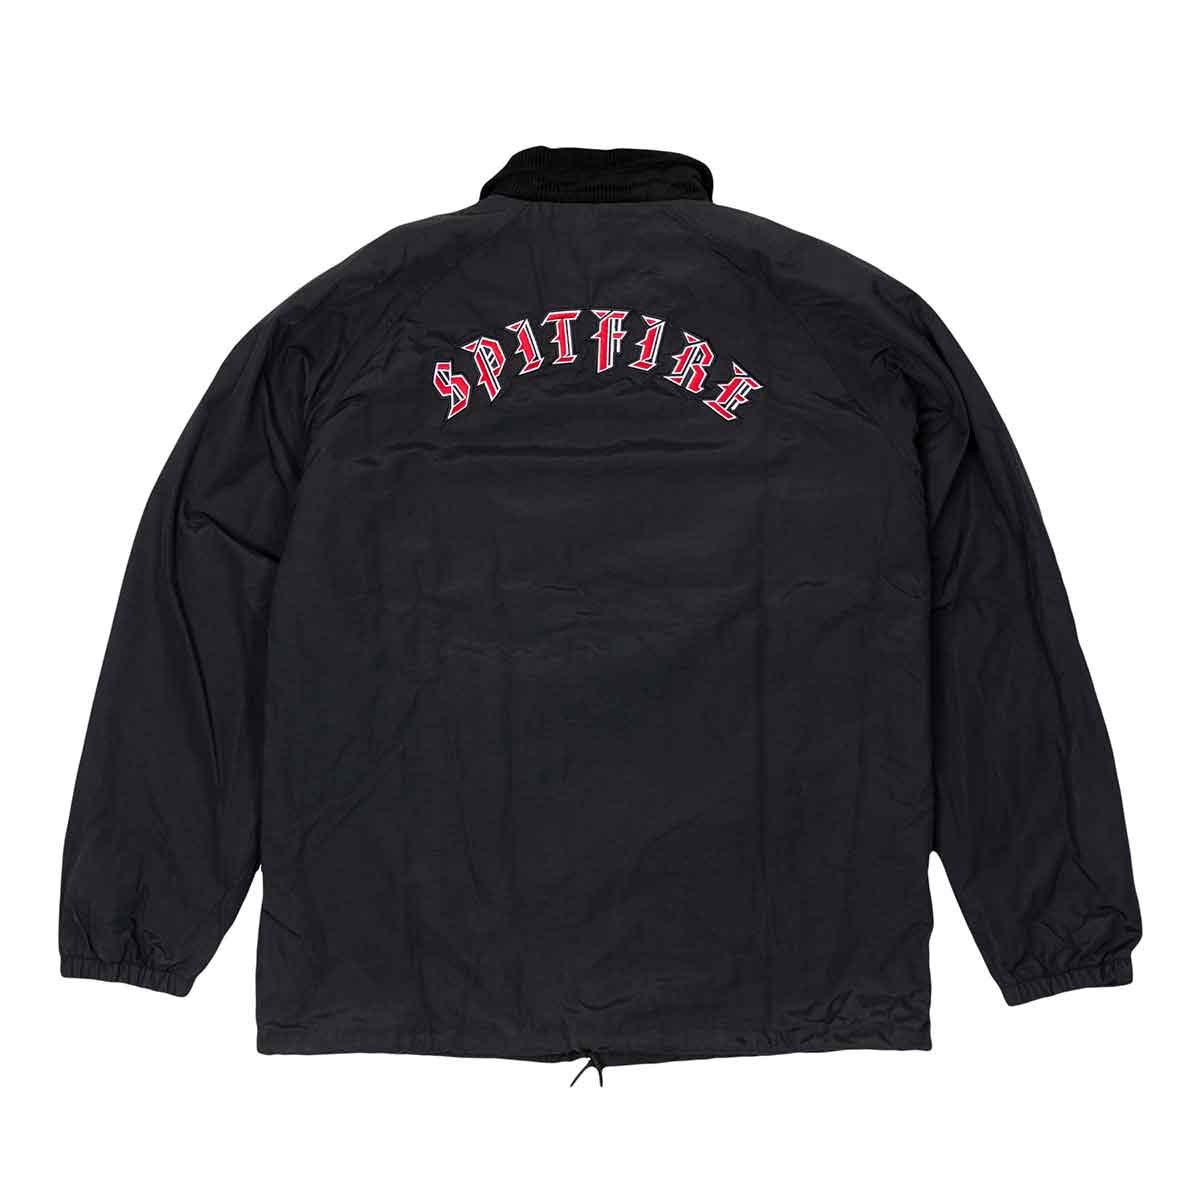 Spitfire Old E Embroidered Jacket